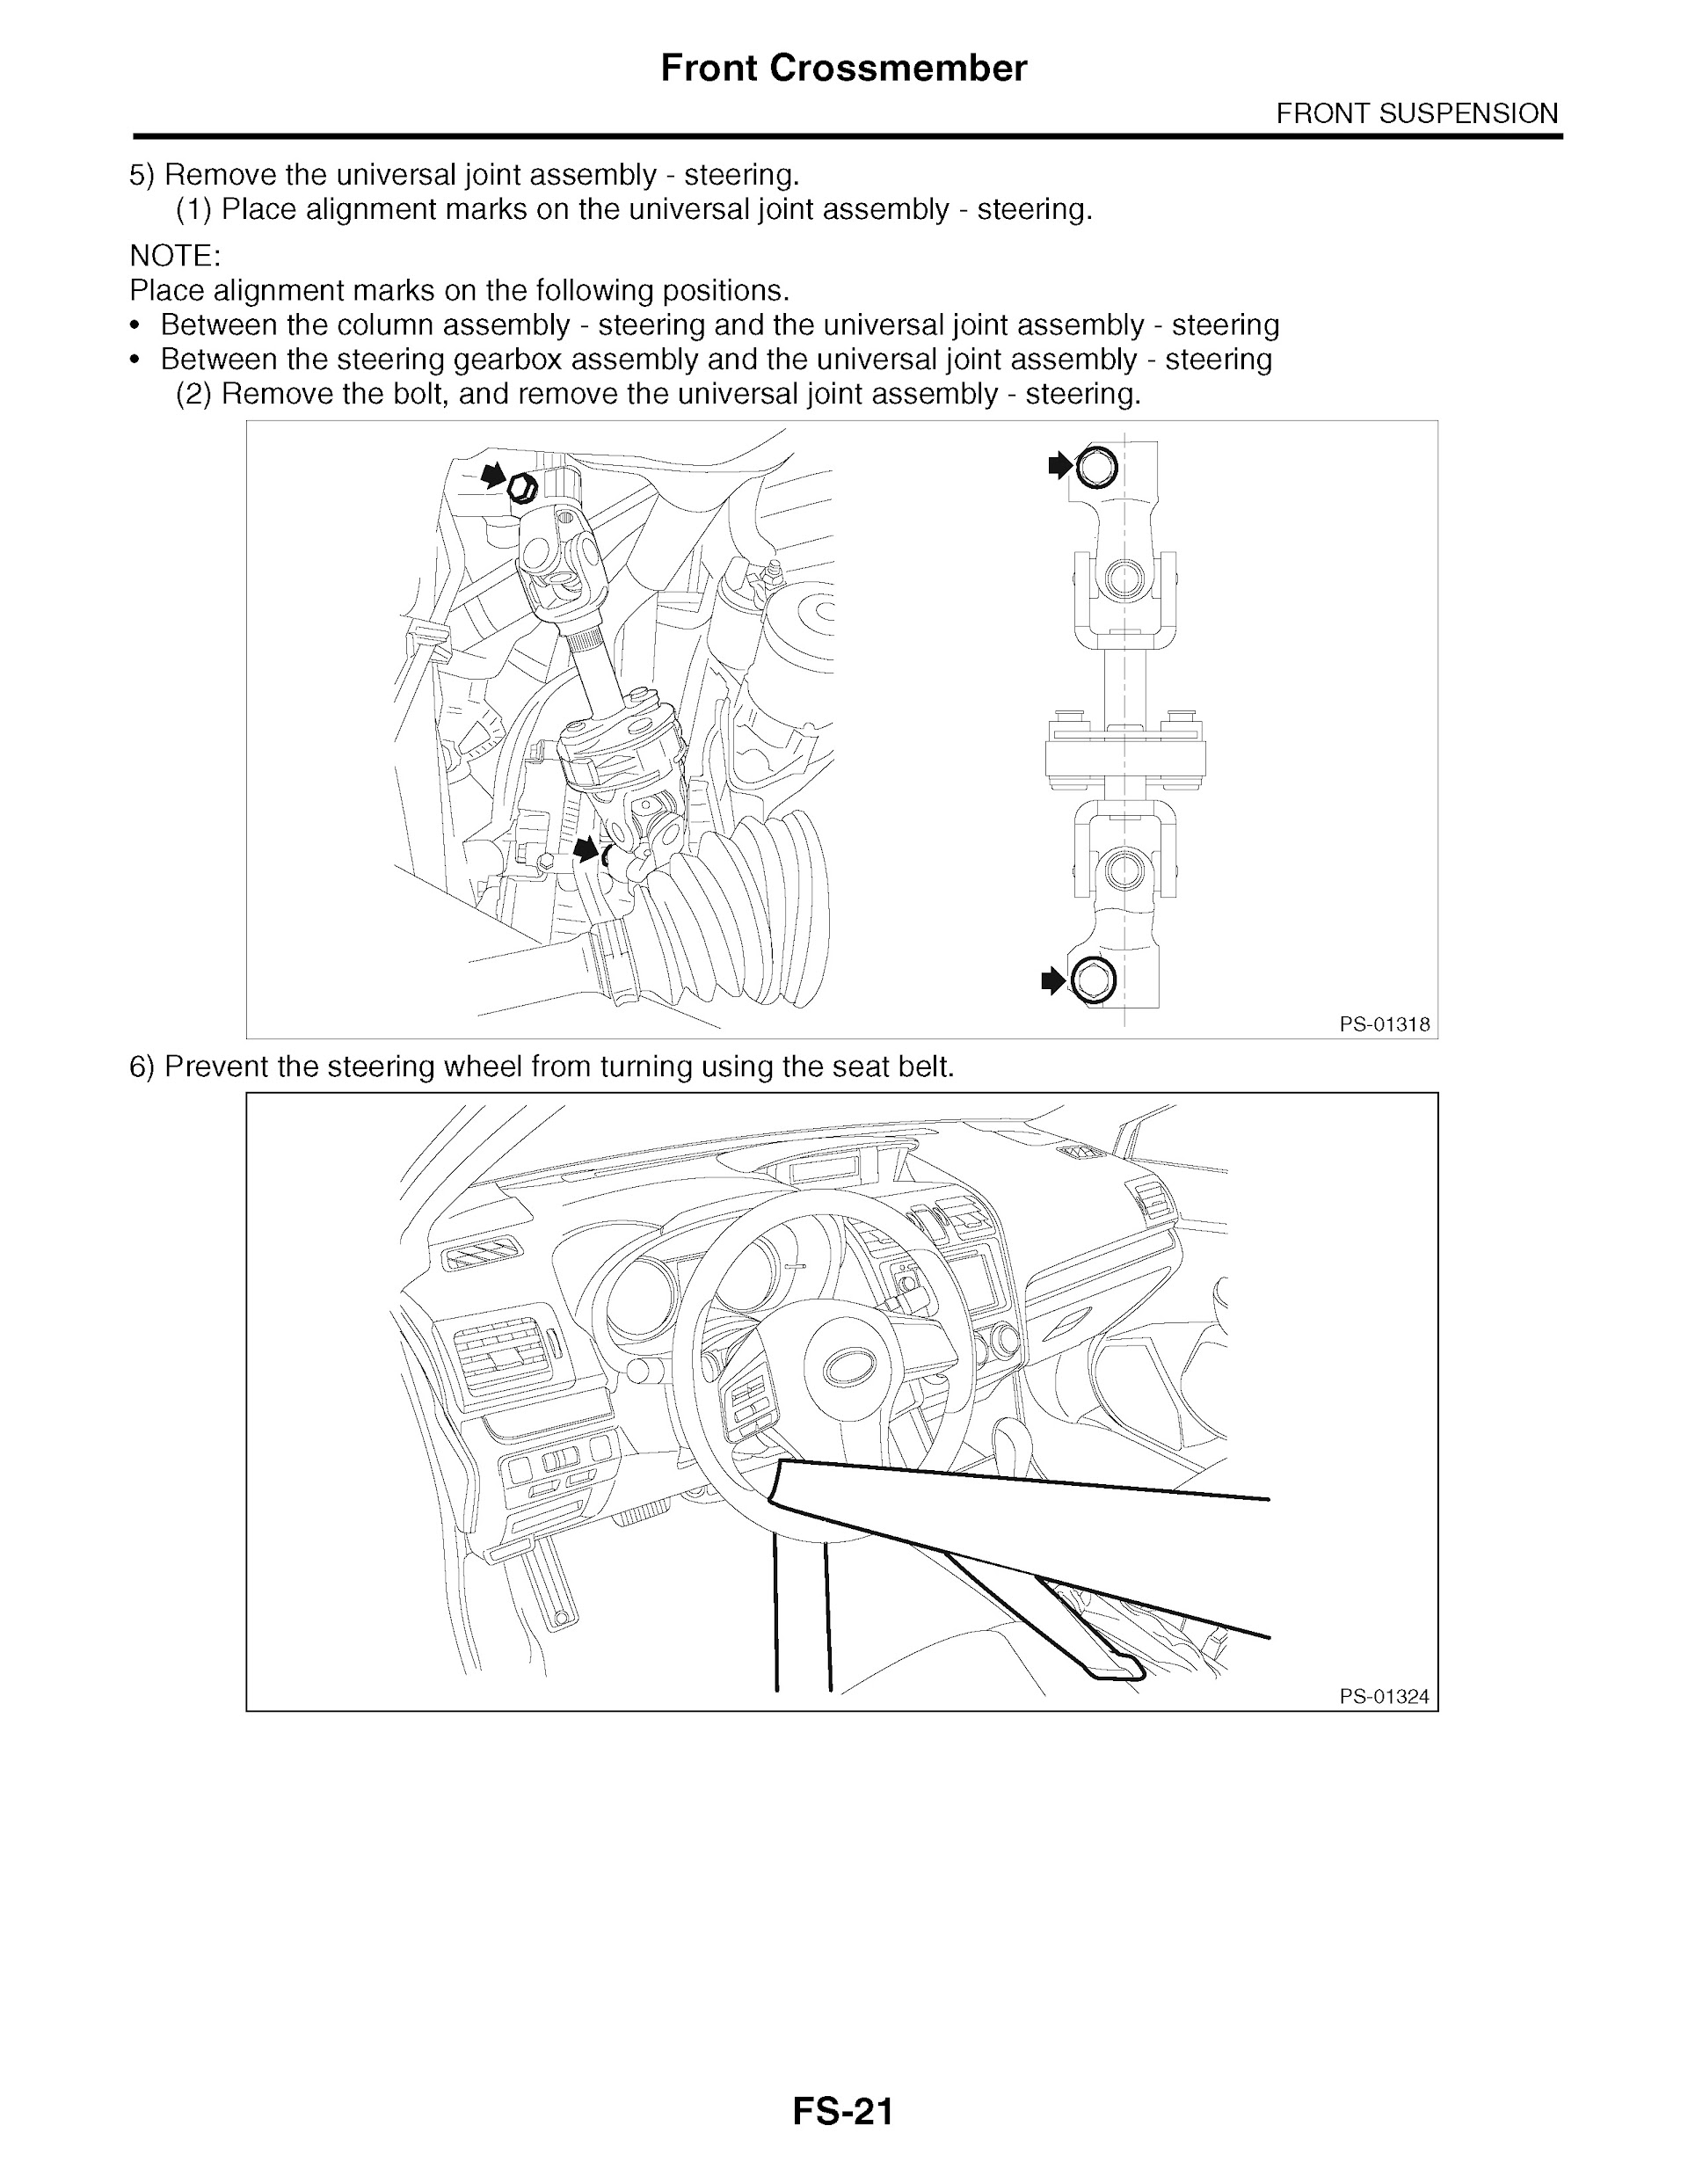 2013 Subaru Impreza & XV Crosstrek Repair Manual, Front Crossmember